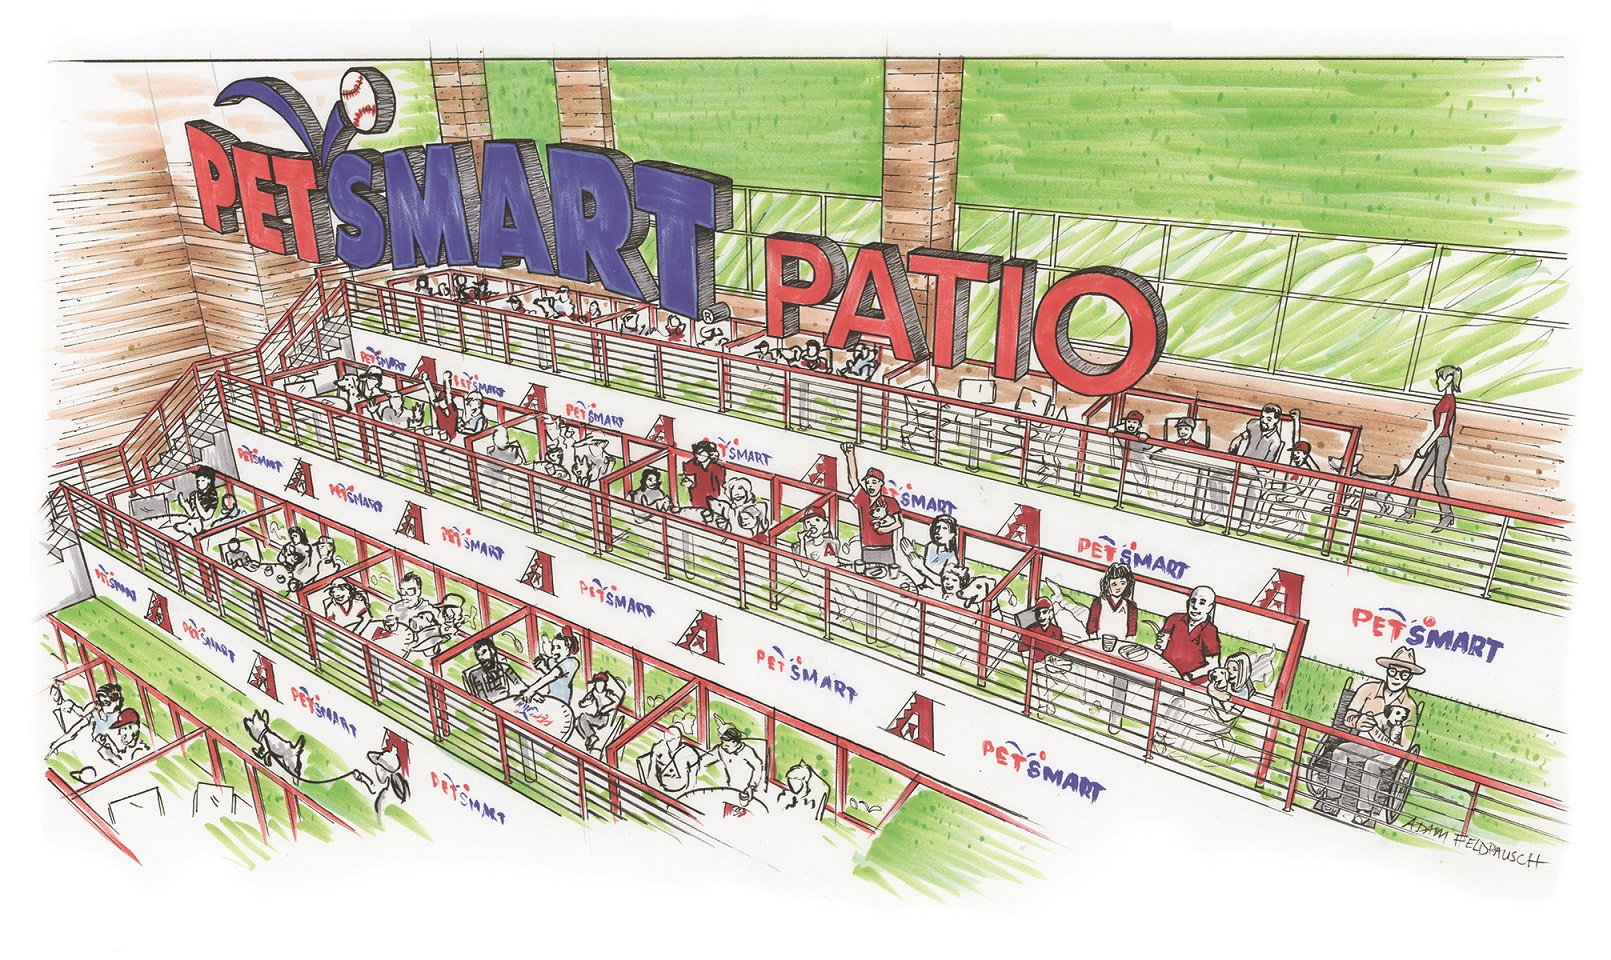 Petsmart Patio Chase Field Seating Chart